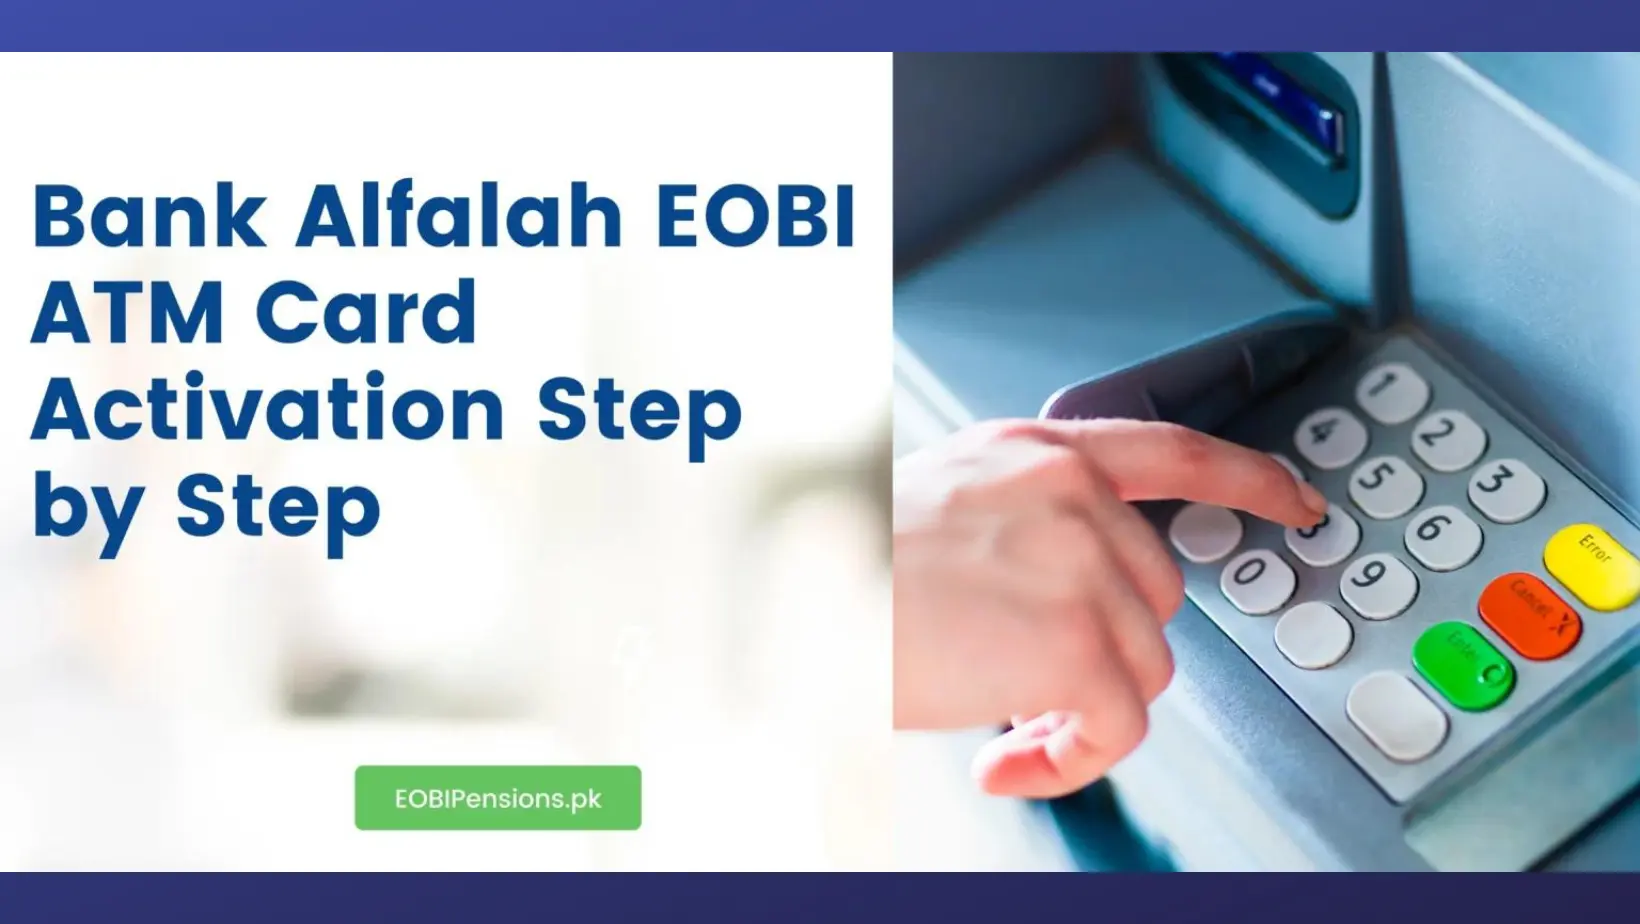 Bank Alfalah EOBI ATM Card Activation2